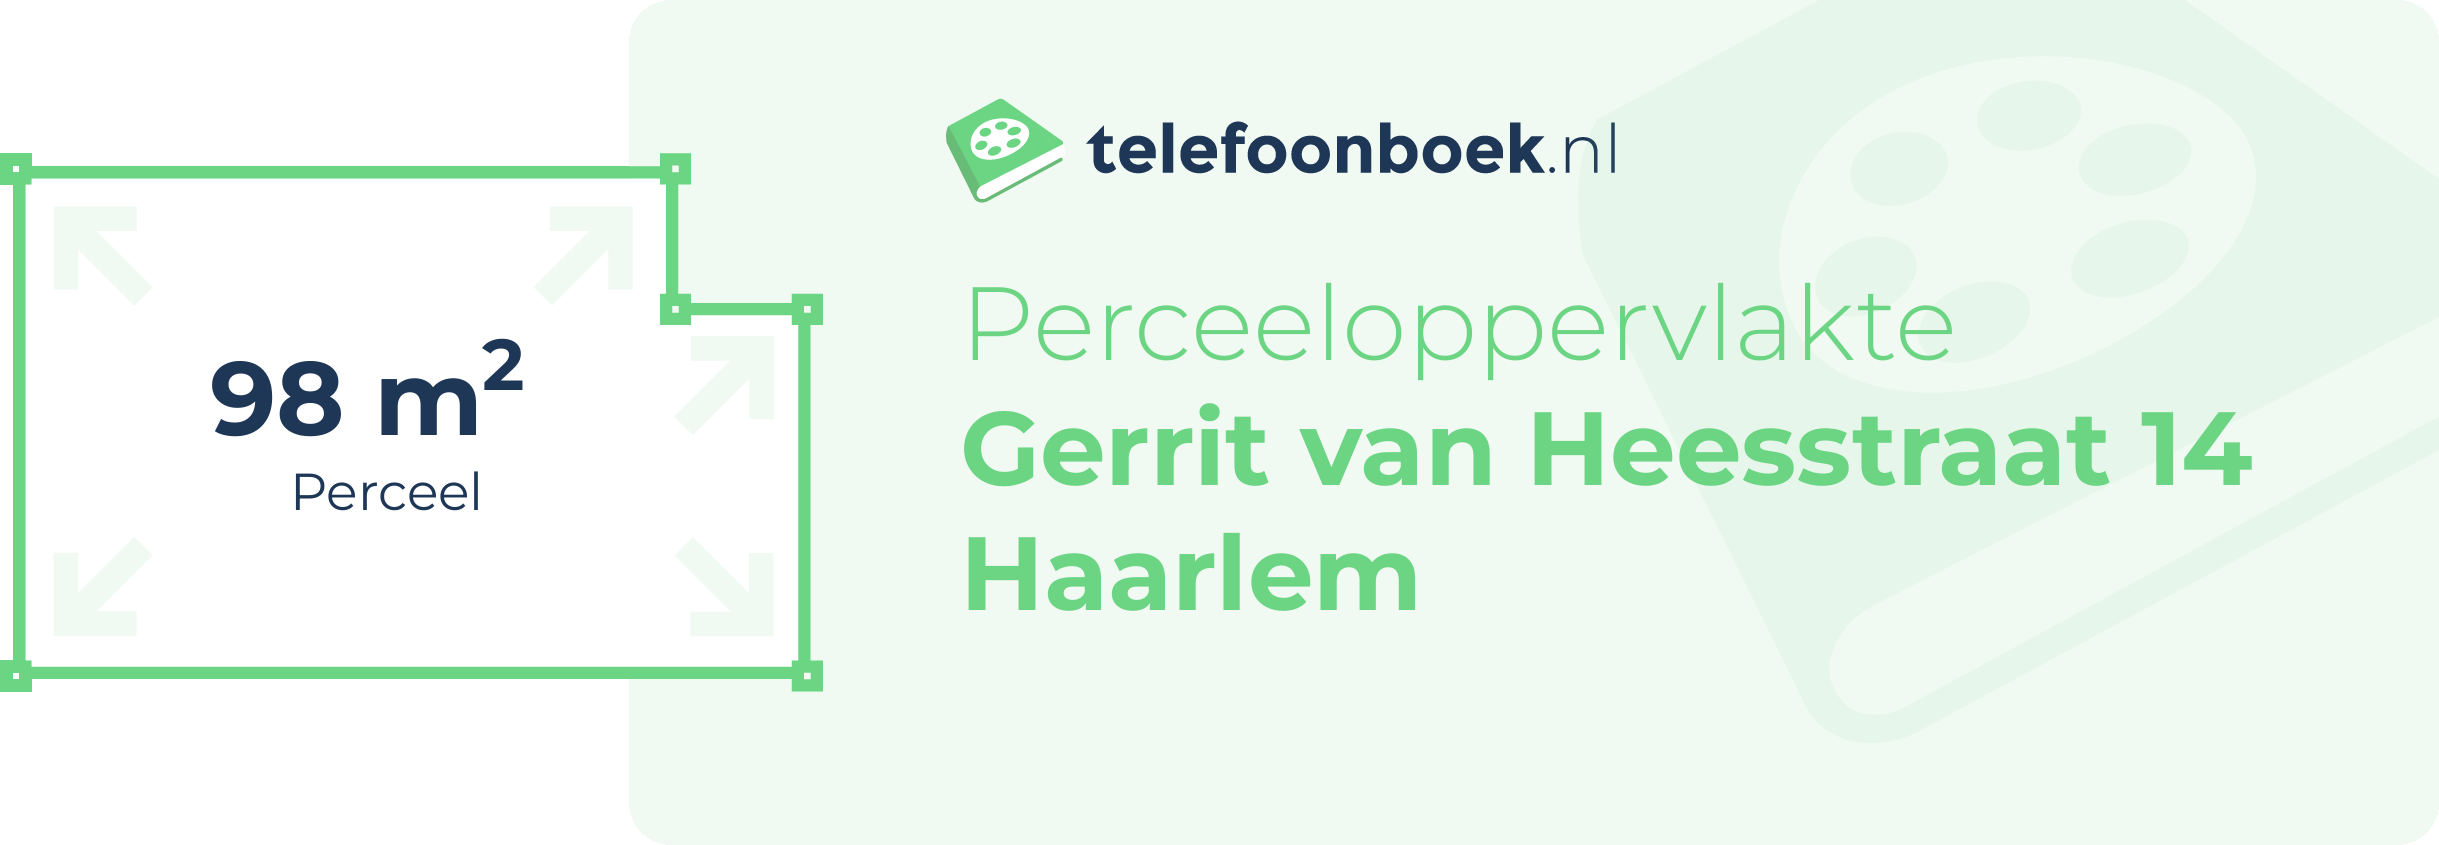 Perceeloppervlakte Gerrit Van Heesstraat 14 Haarlem